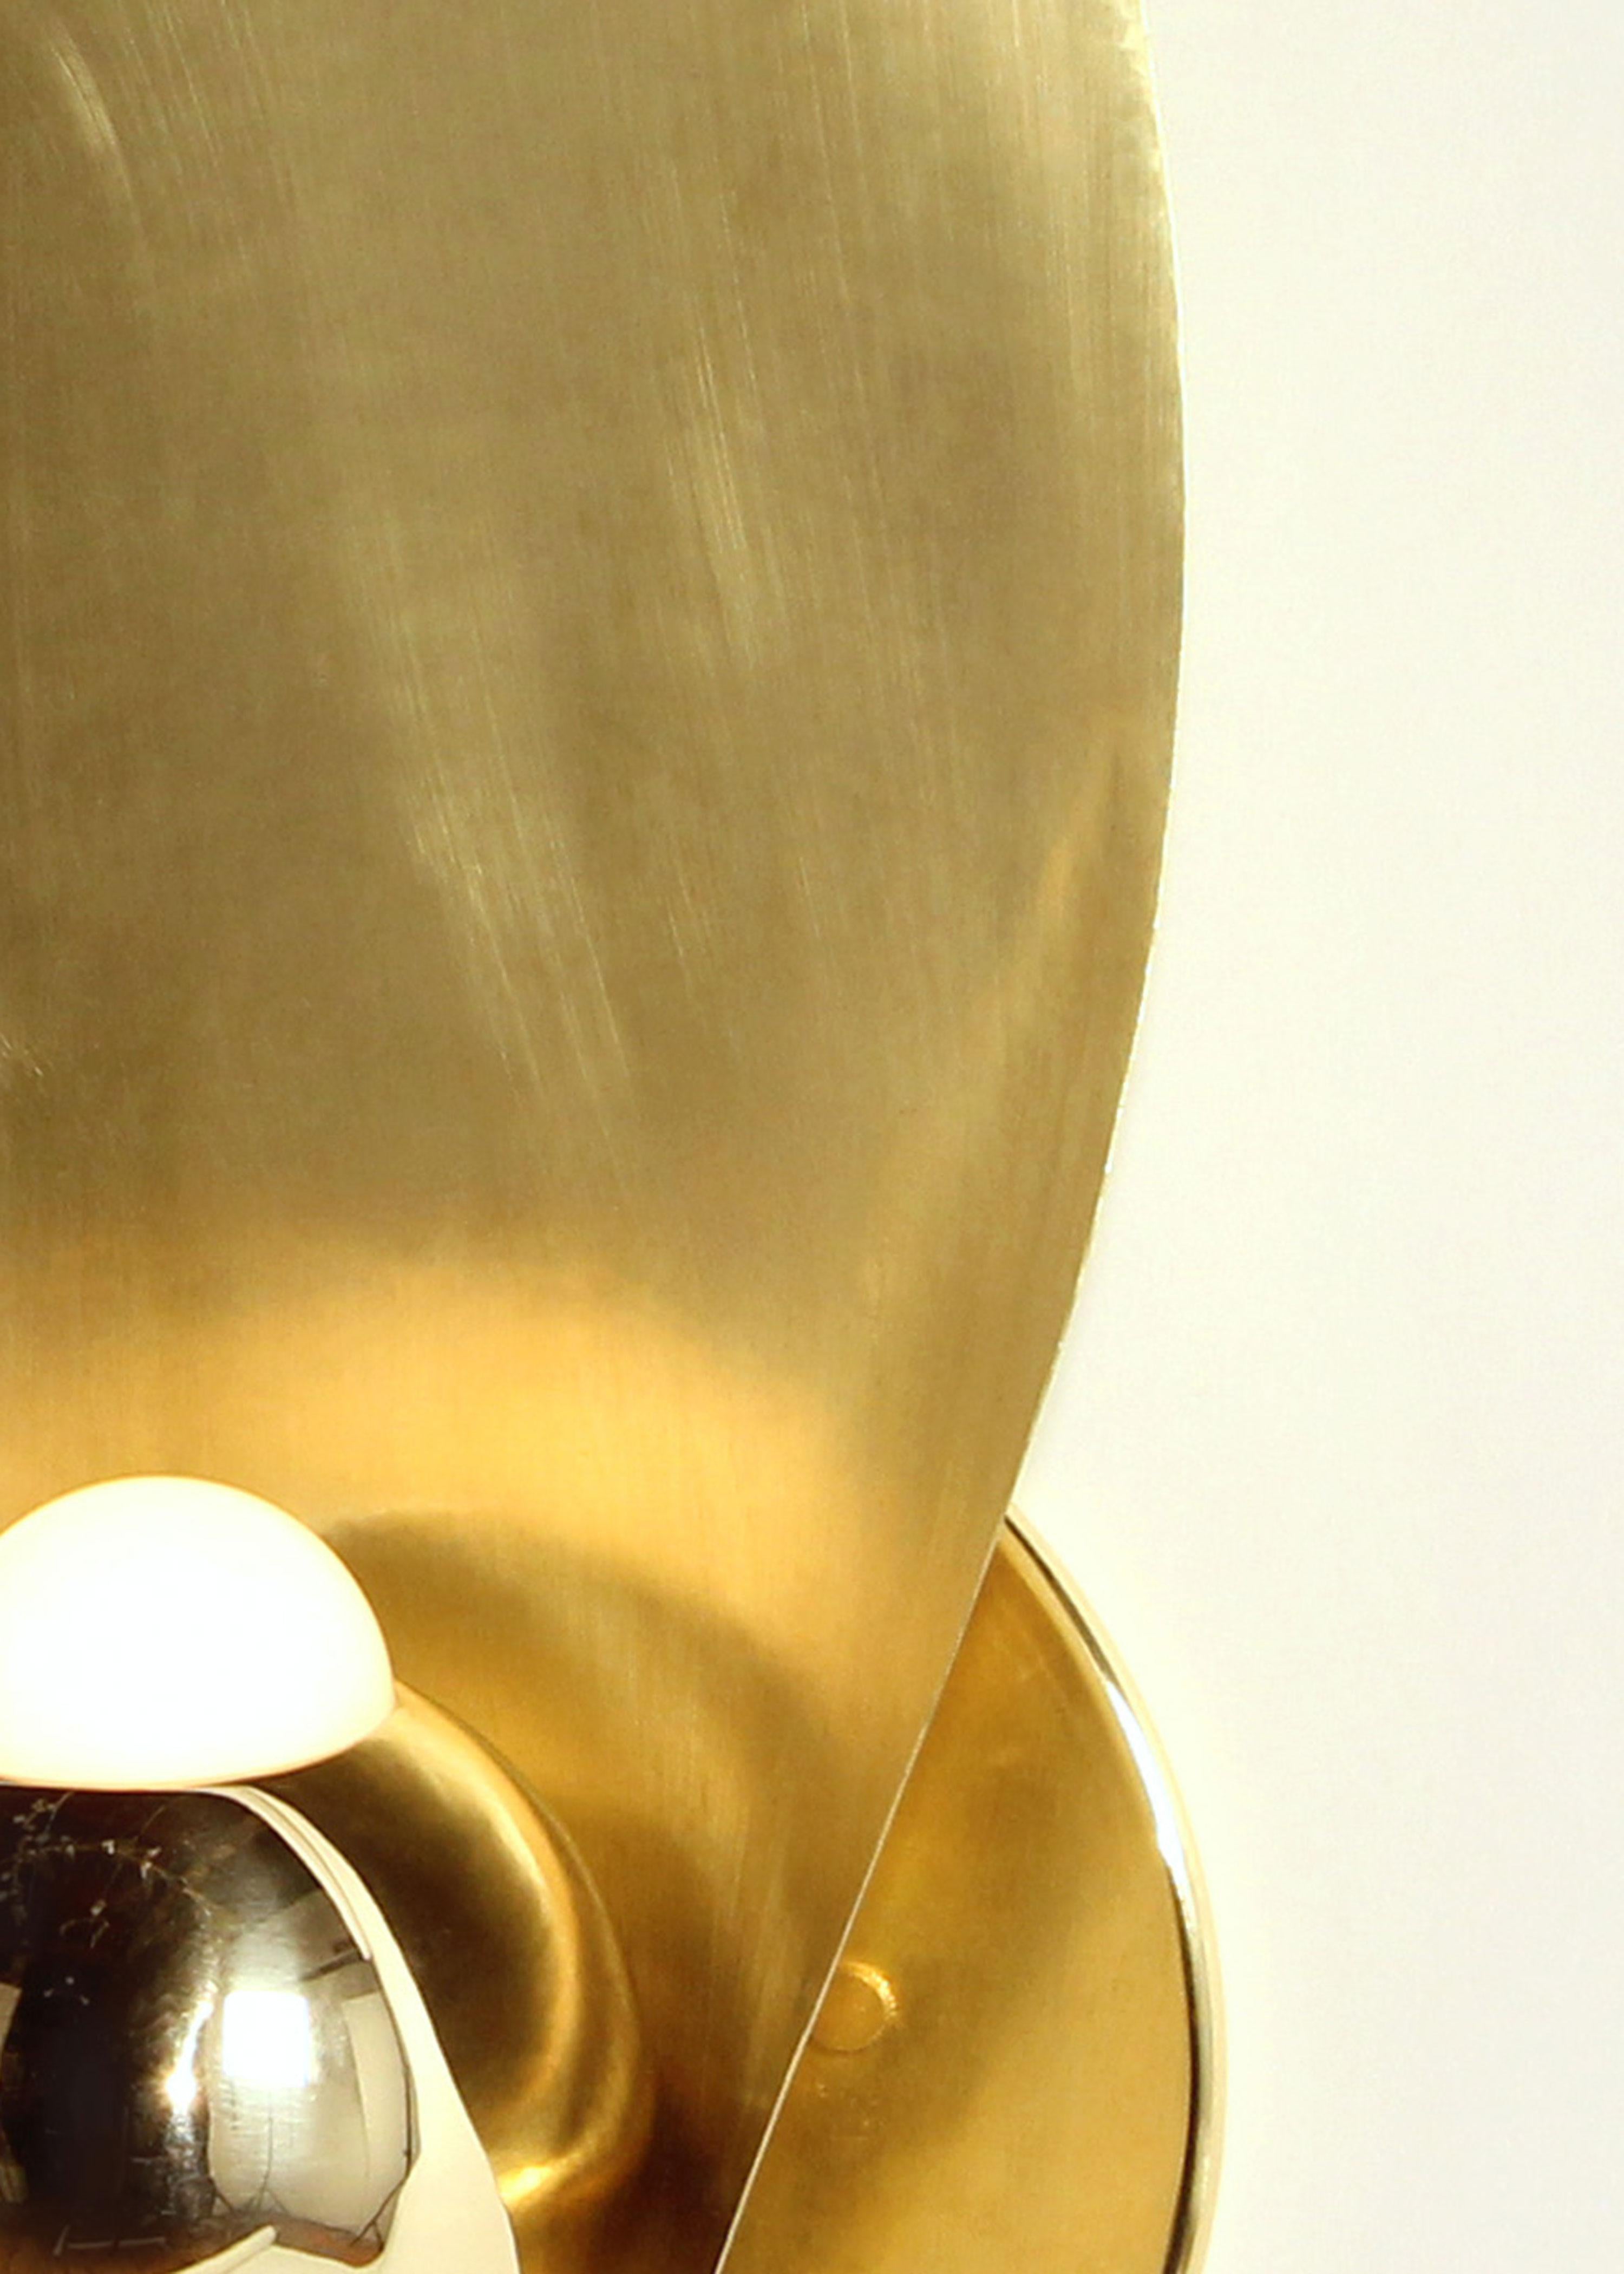 Polished Laurel One-Leaf Sconce, Brass Finish, Modern Sculptural Organic Lighting